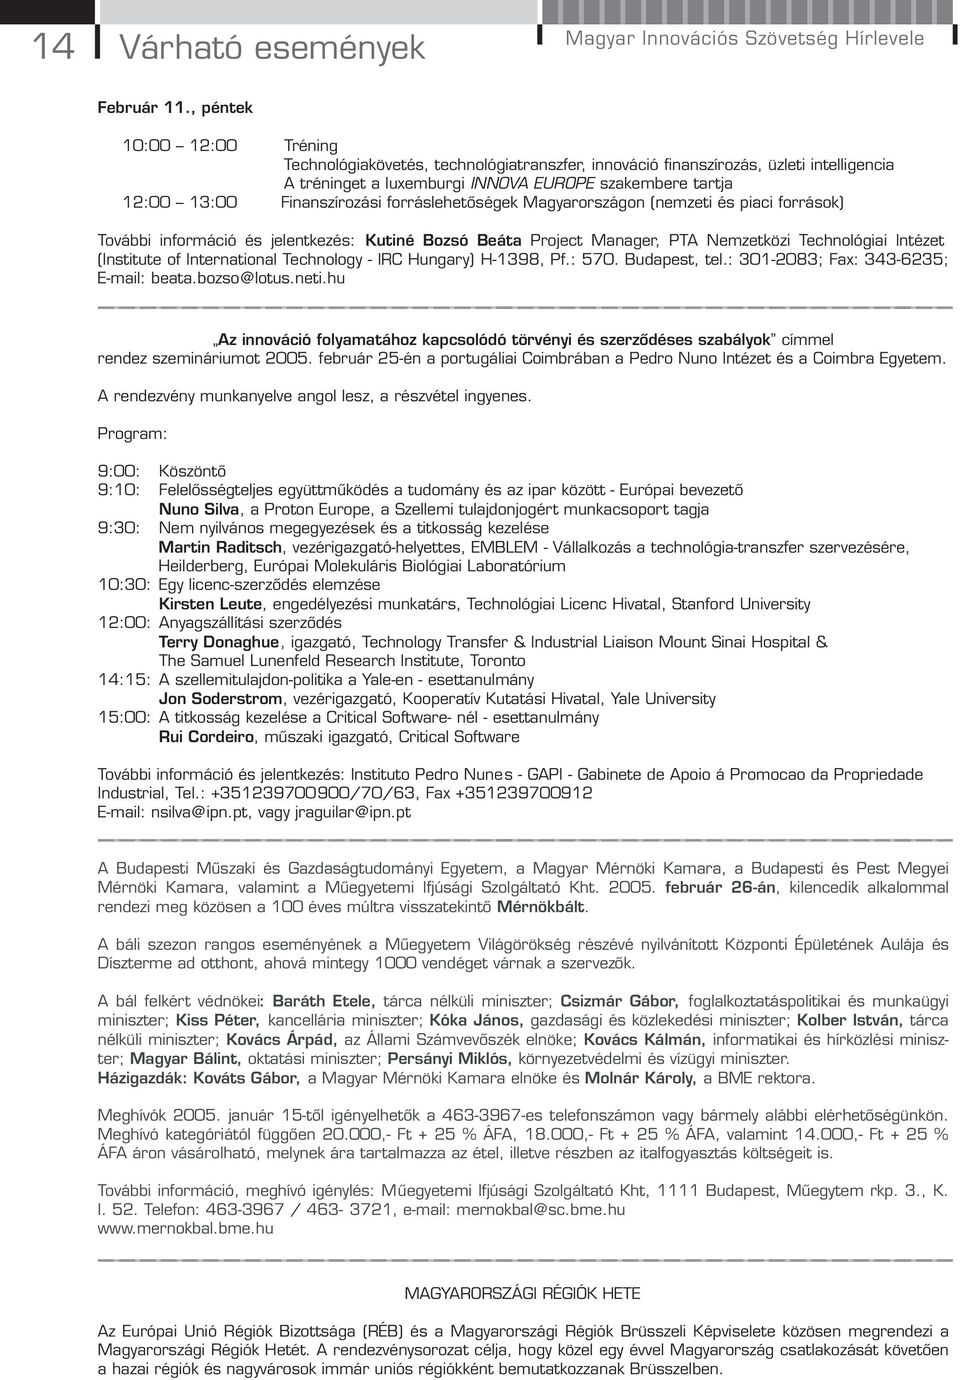 Finanszírozási forráslehetőségek Magyarországon (nemzeti és piaci források) További információ és jelentkezés: Kutiné Bozsó Beáta Project Manager, PTA Nemzetközi Technológiai Intézet (Institute of